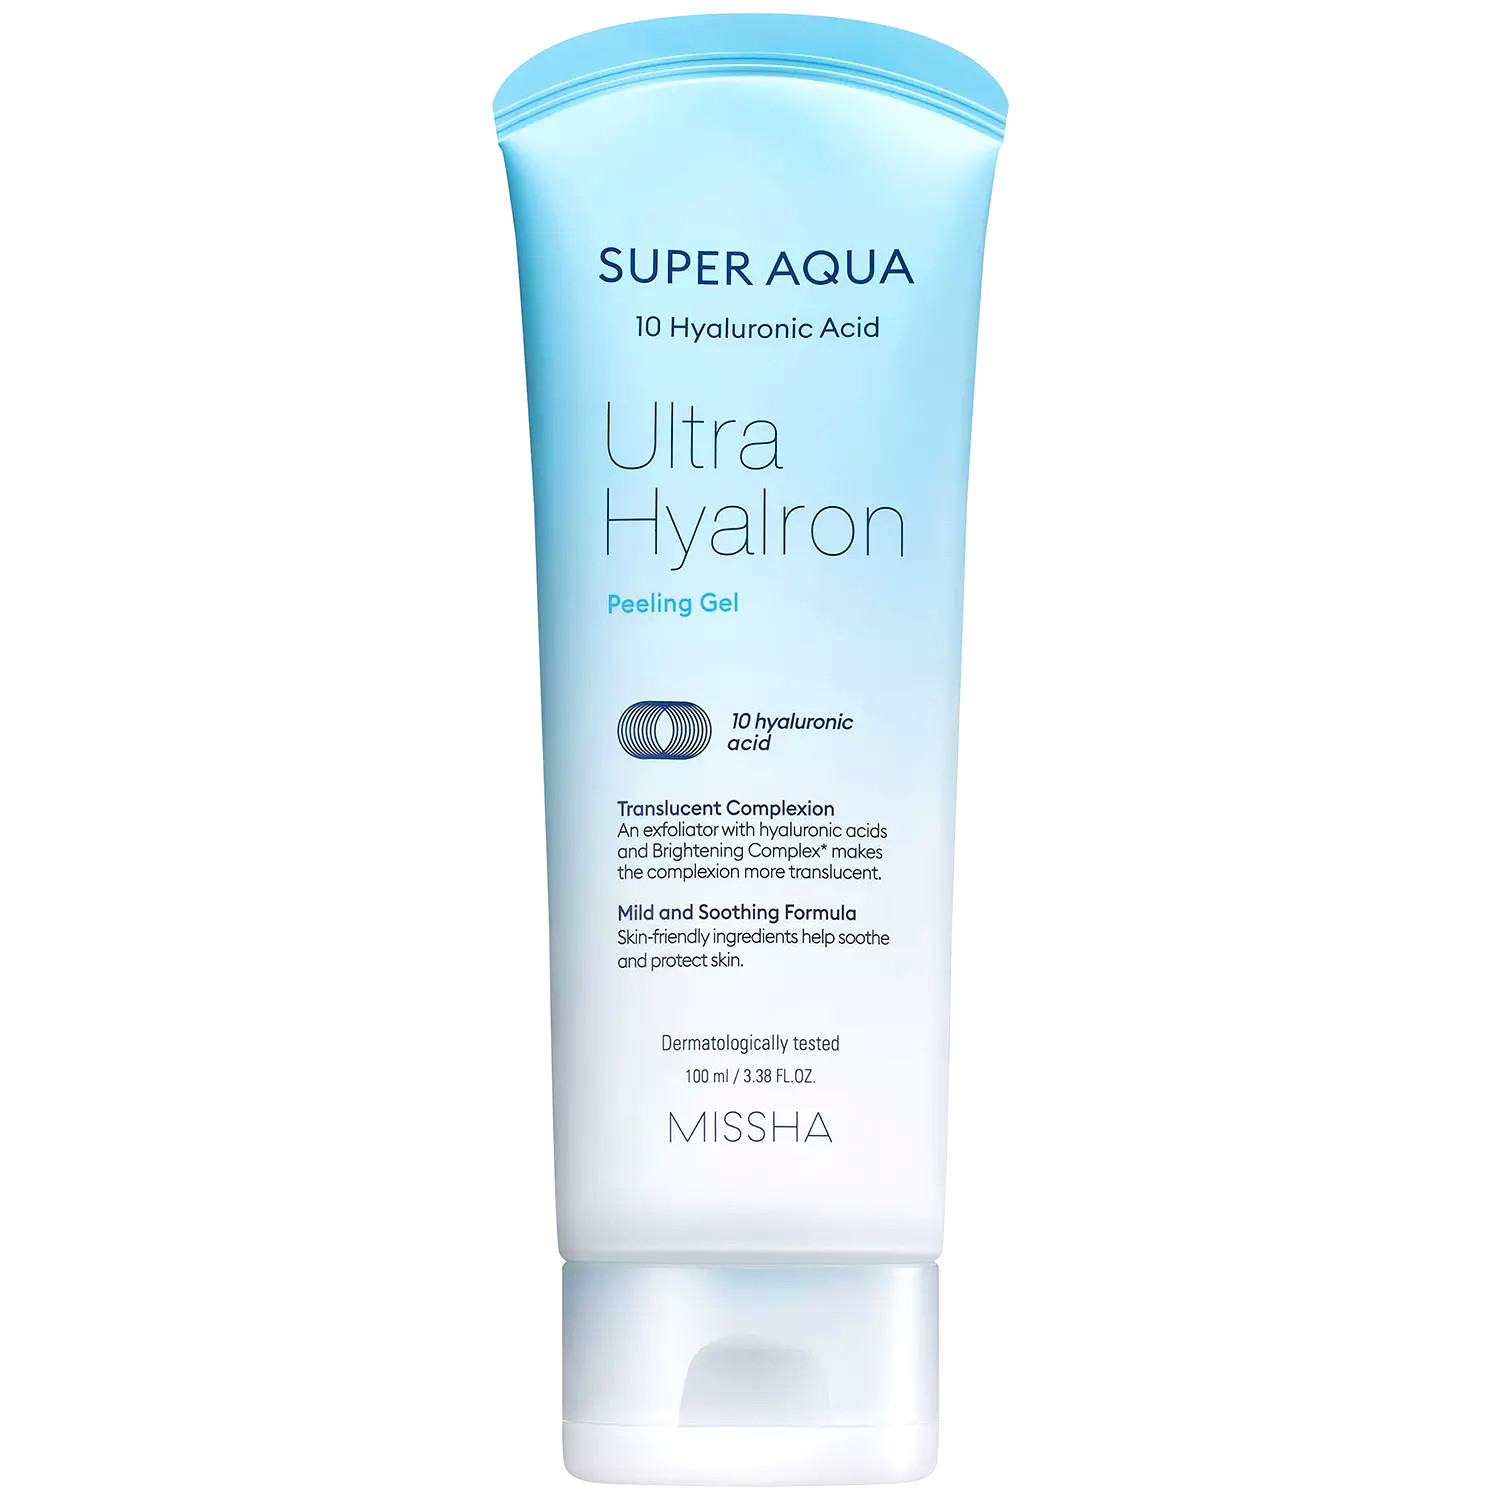 Пилинг-гель с гиалуроновой кислотой для лица MISSHA Super Aqua Ultra Hyalron Peeling Gel missha тонер пэды для лица super aqua ultra hyalron увлажняющие